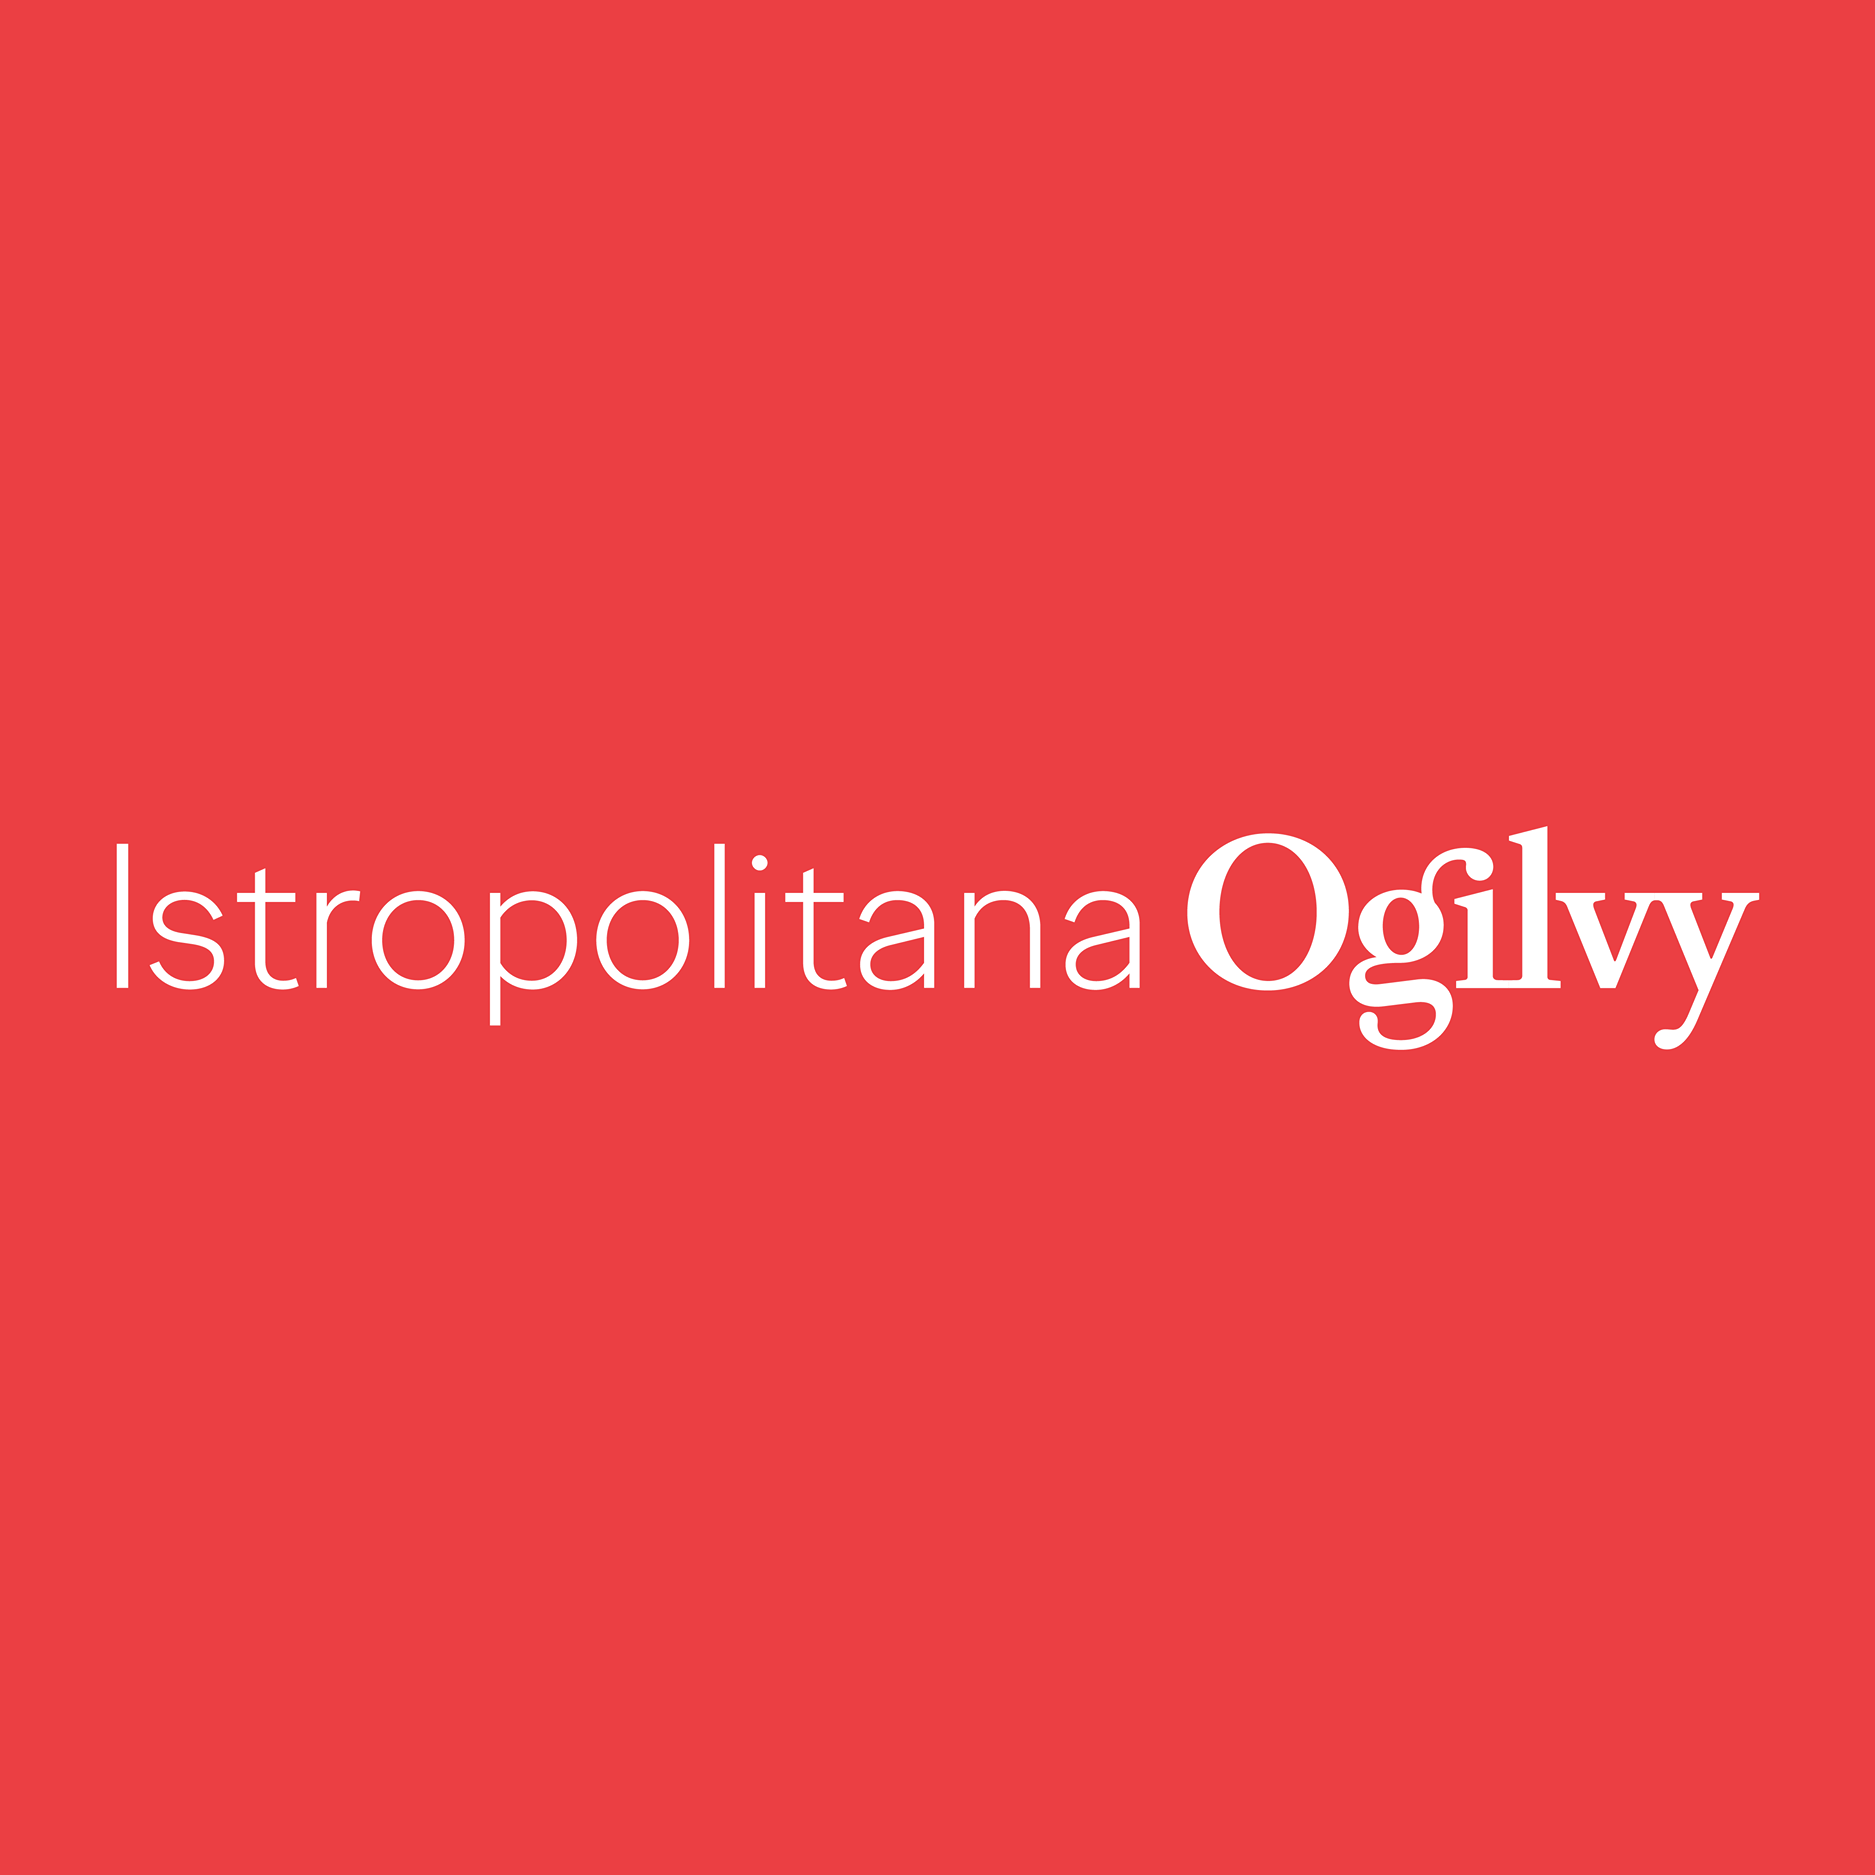 Istropolitana Ogilvy